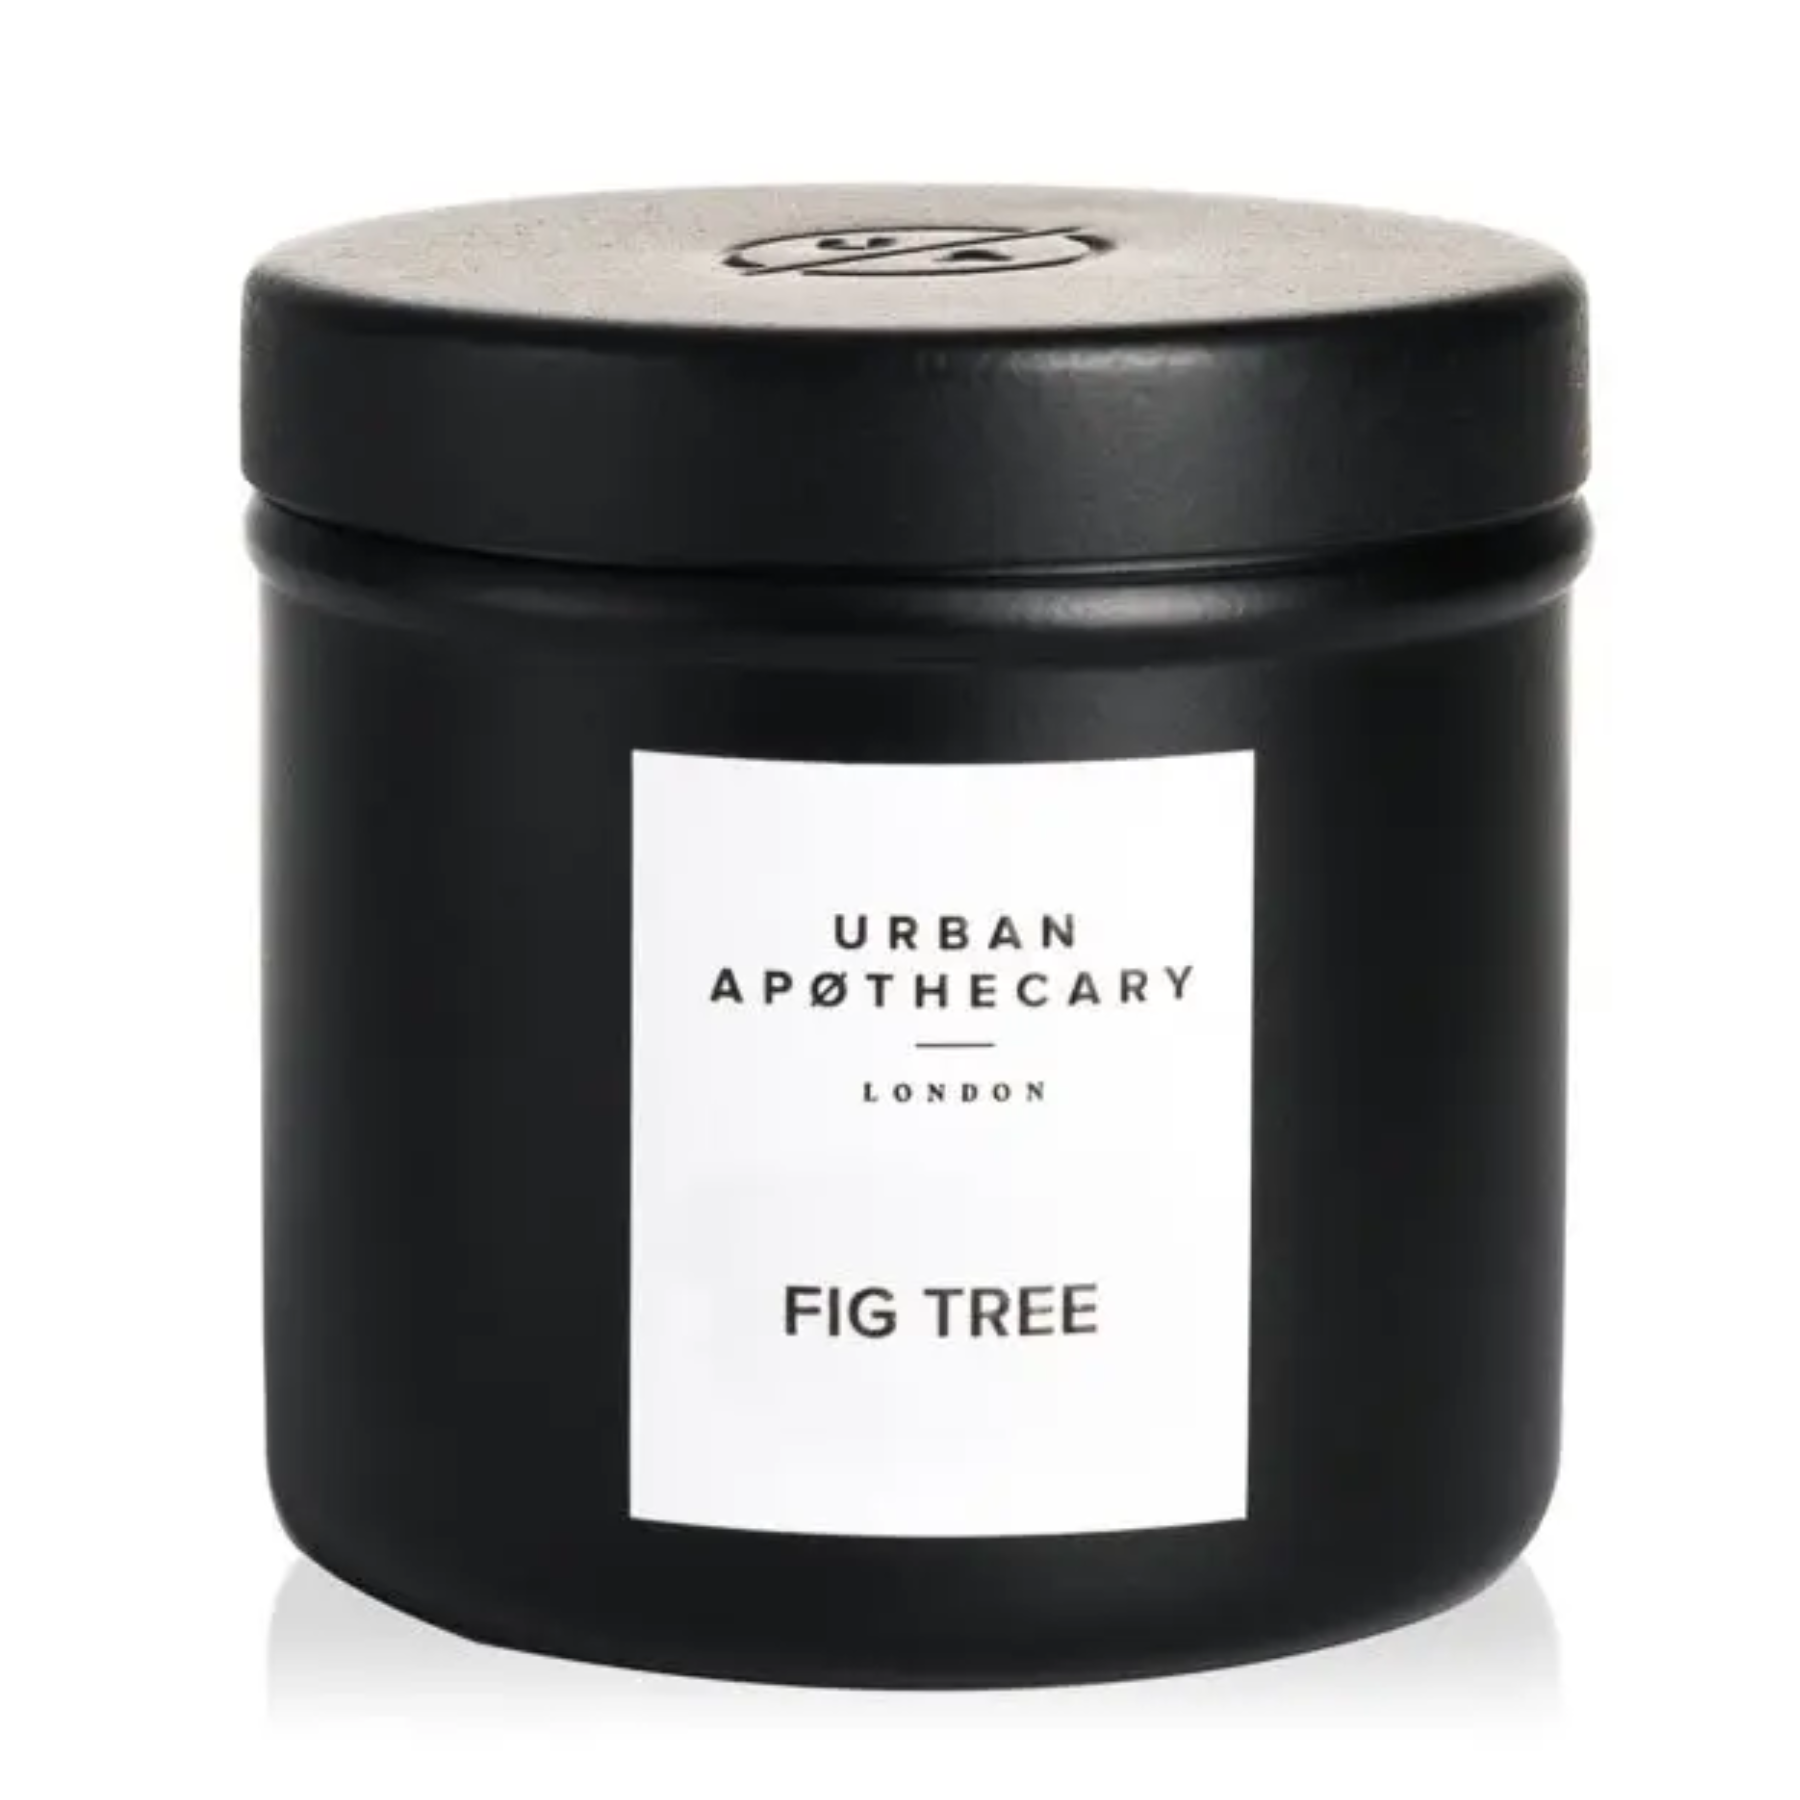 Ароматическая свеча с фруктово-цветочным ароматом и древесными нотами Urban apothecary Fig Tree, 175г